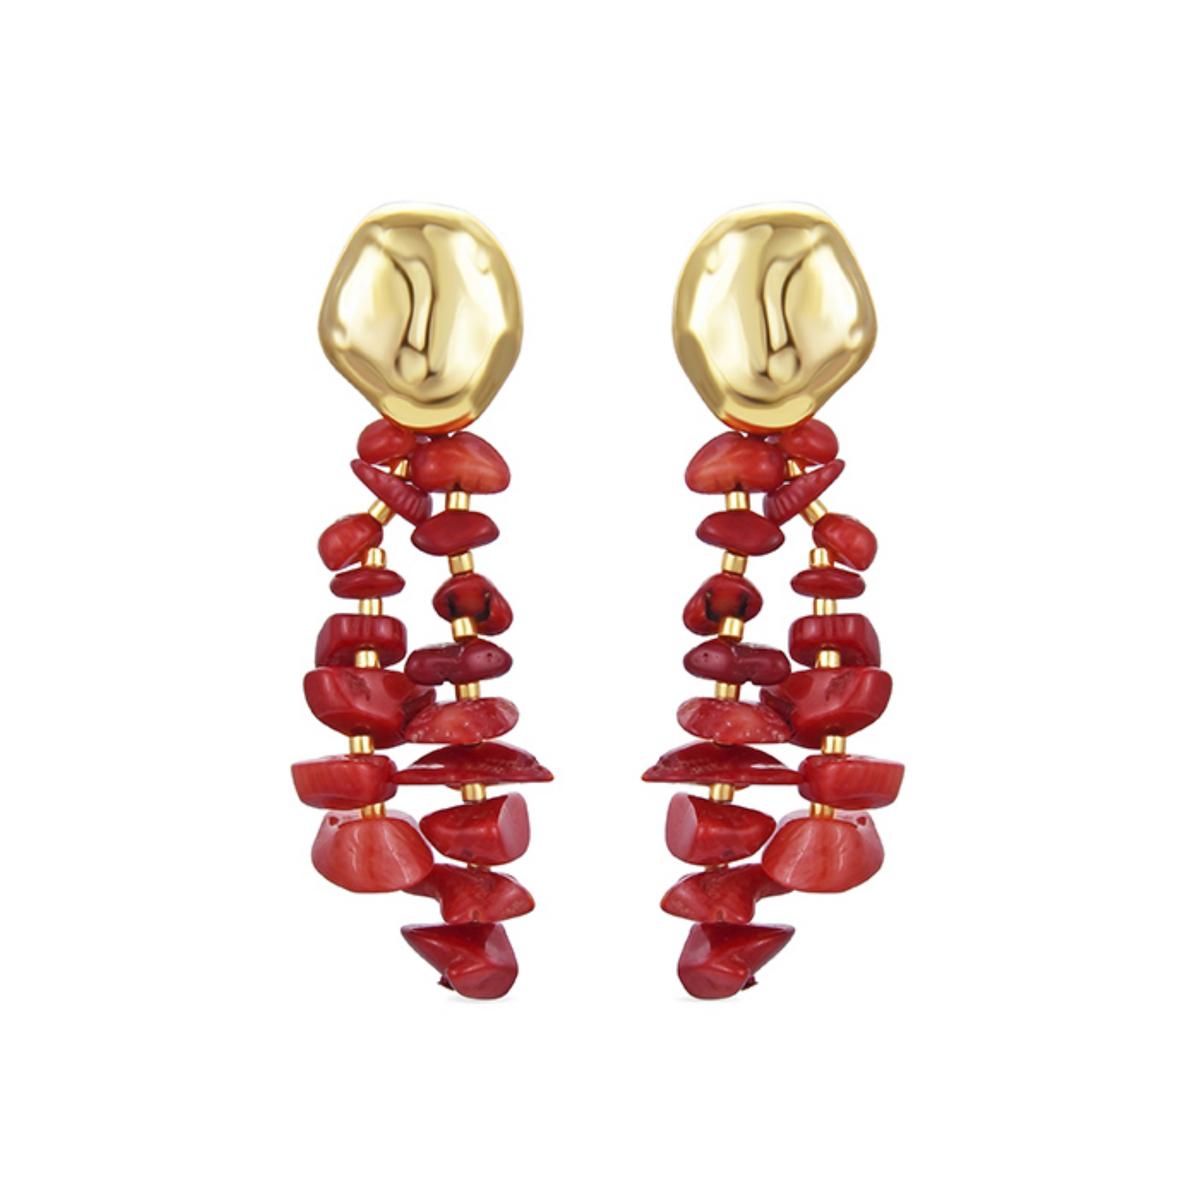 Boucles d'oreilles en argent avec onyx, brillants et corail rouge